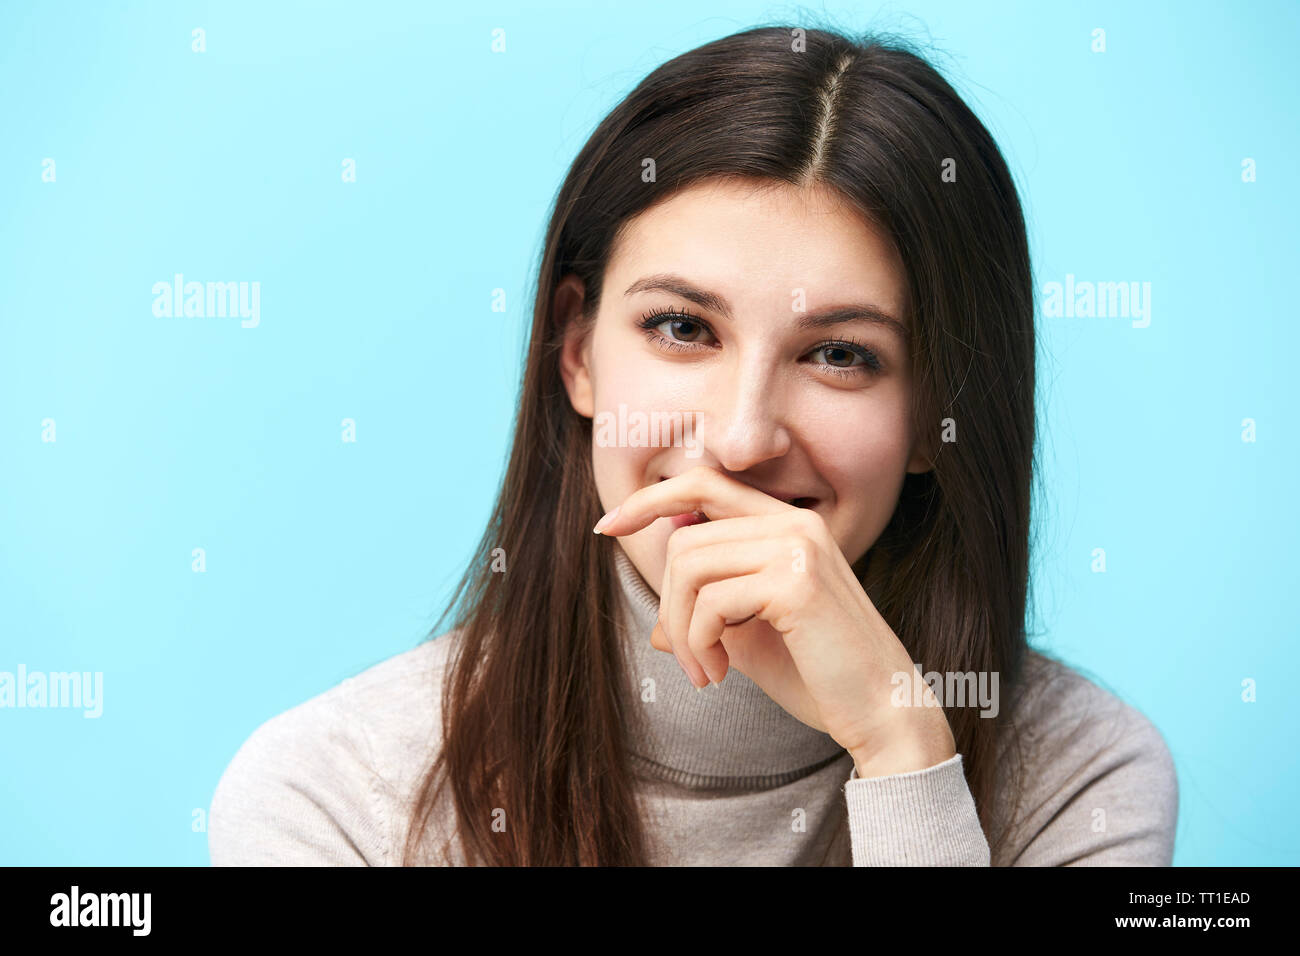 Ritratto di una giovane e bella donna caucasica, colpo alla testa, guardando la telecamera sorridendo, mano che copre la bocca, isolato su sfondo blu Foto Stock